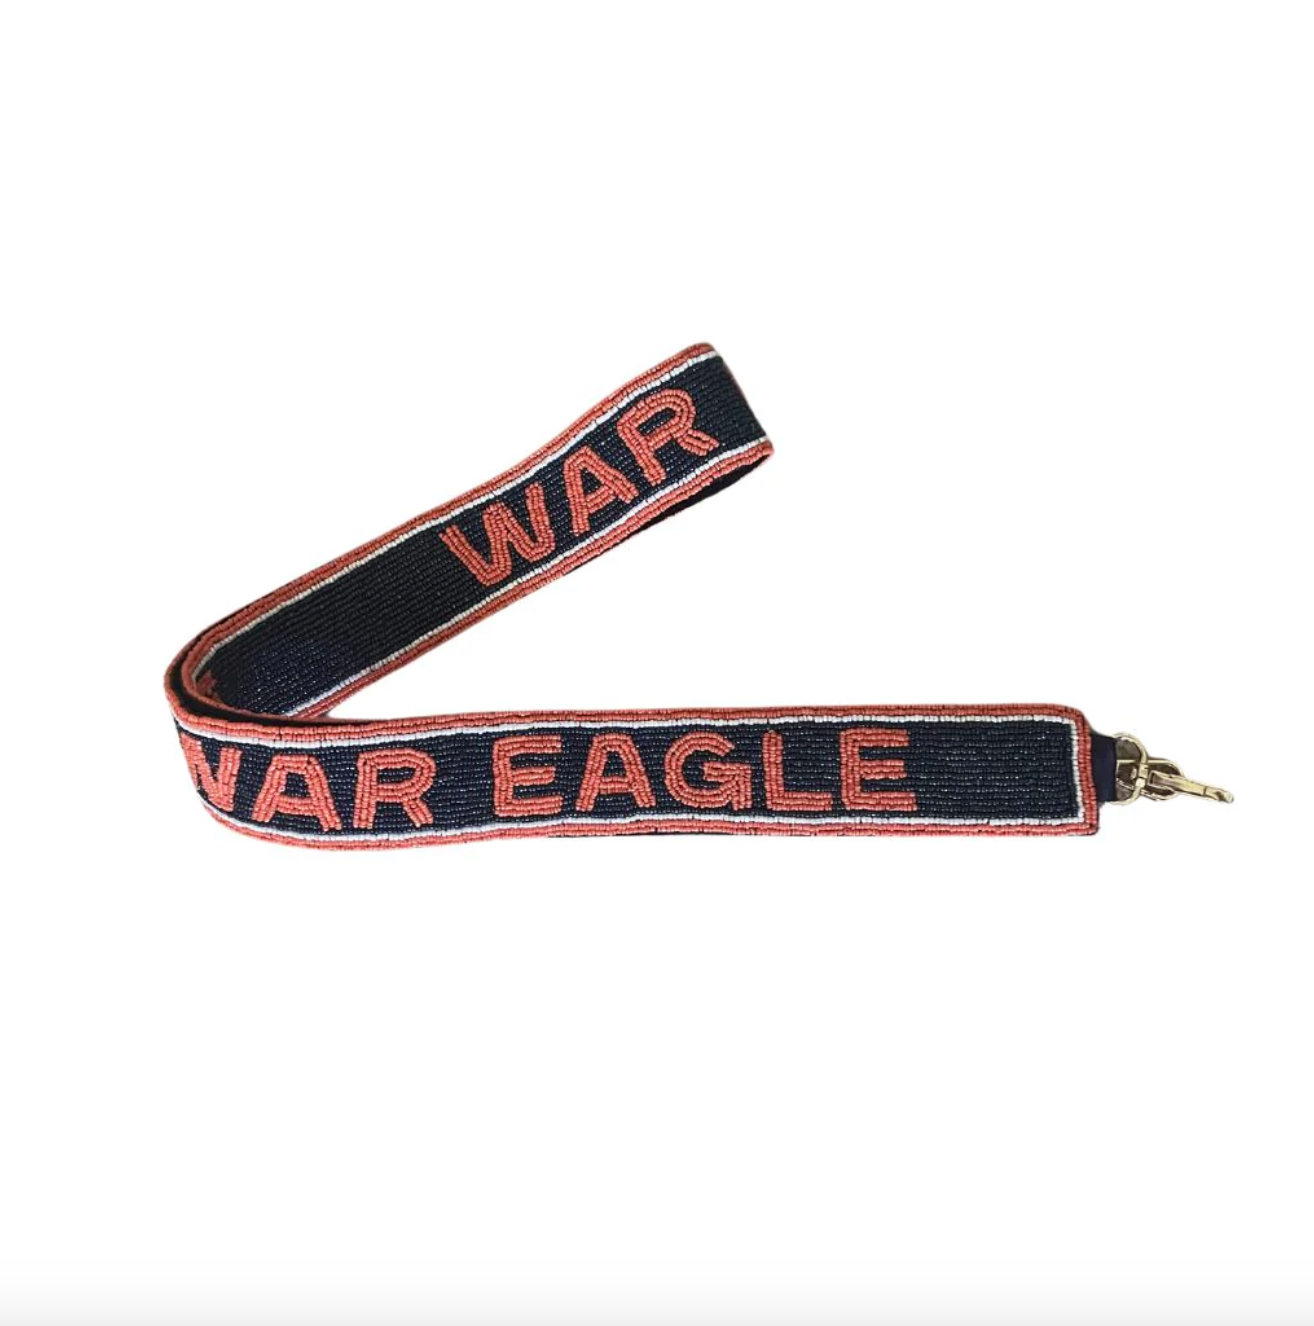 War Eagle Bag Strap